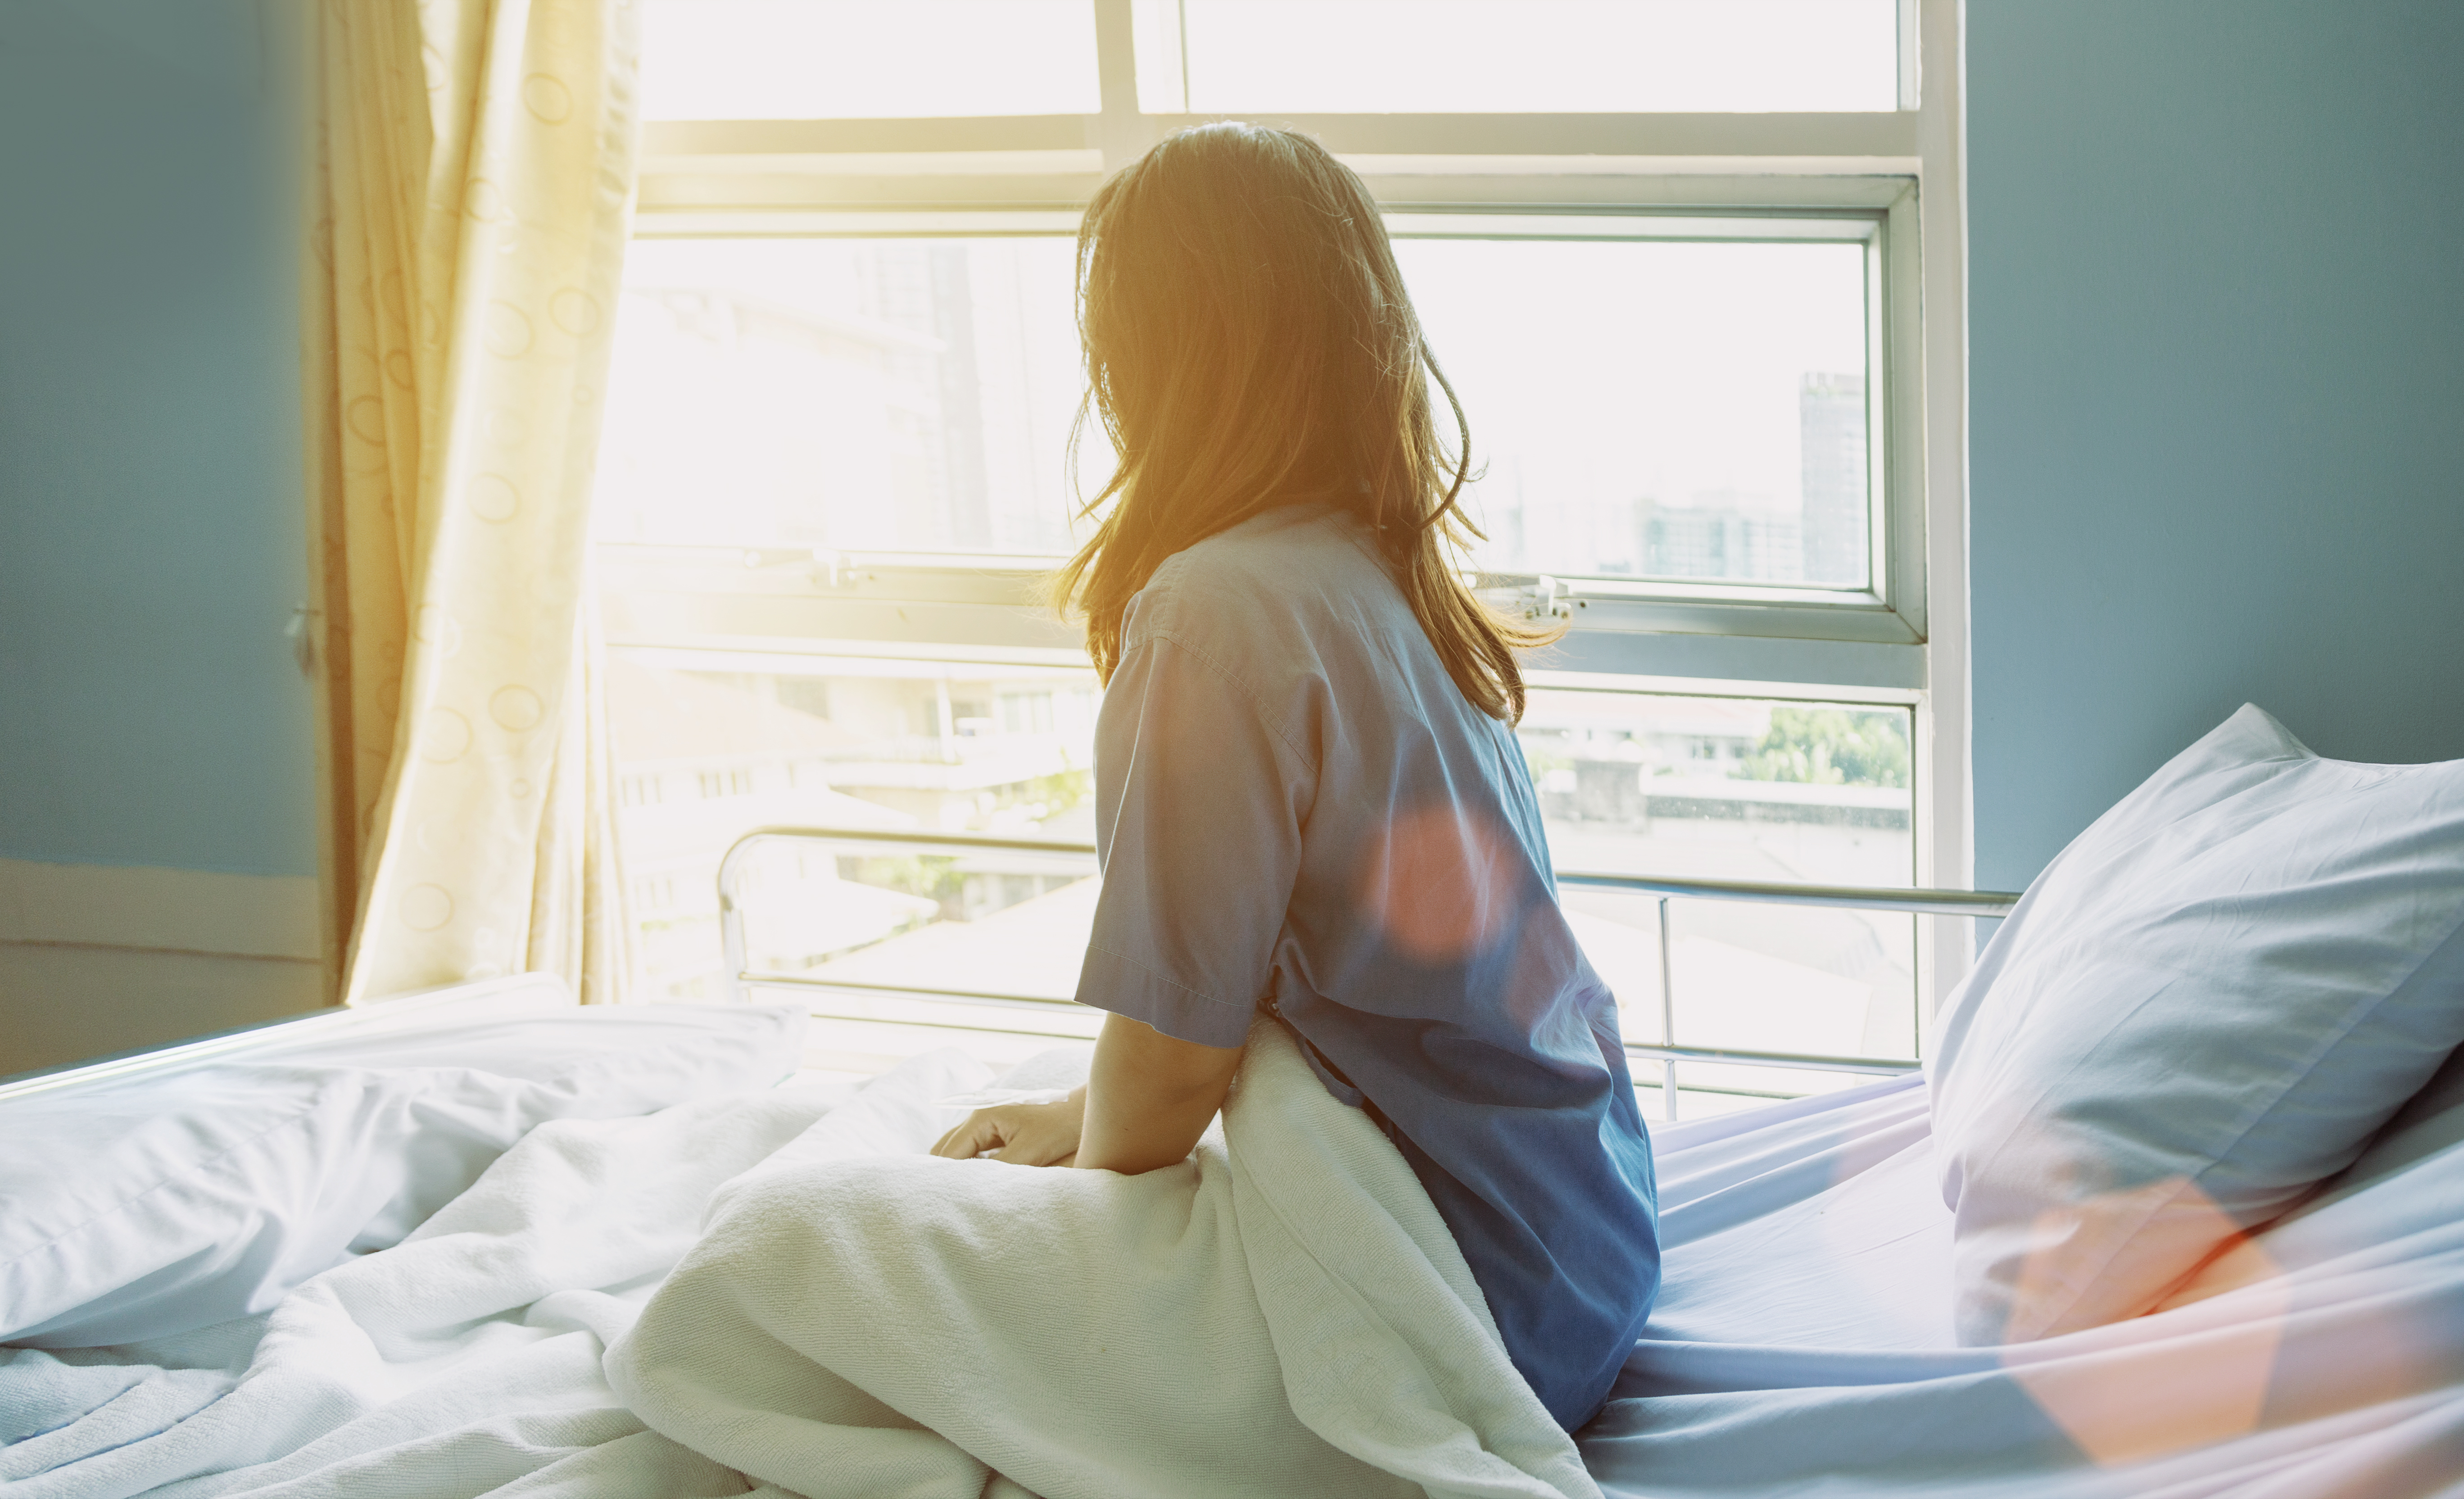 Une femme regarde par la fenêtre alors qu'elle est assise sur un lit d'hôpital | Source : Shutterstock